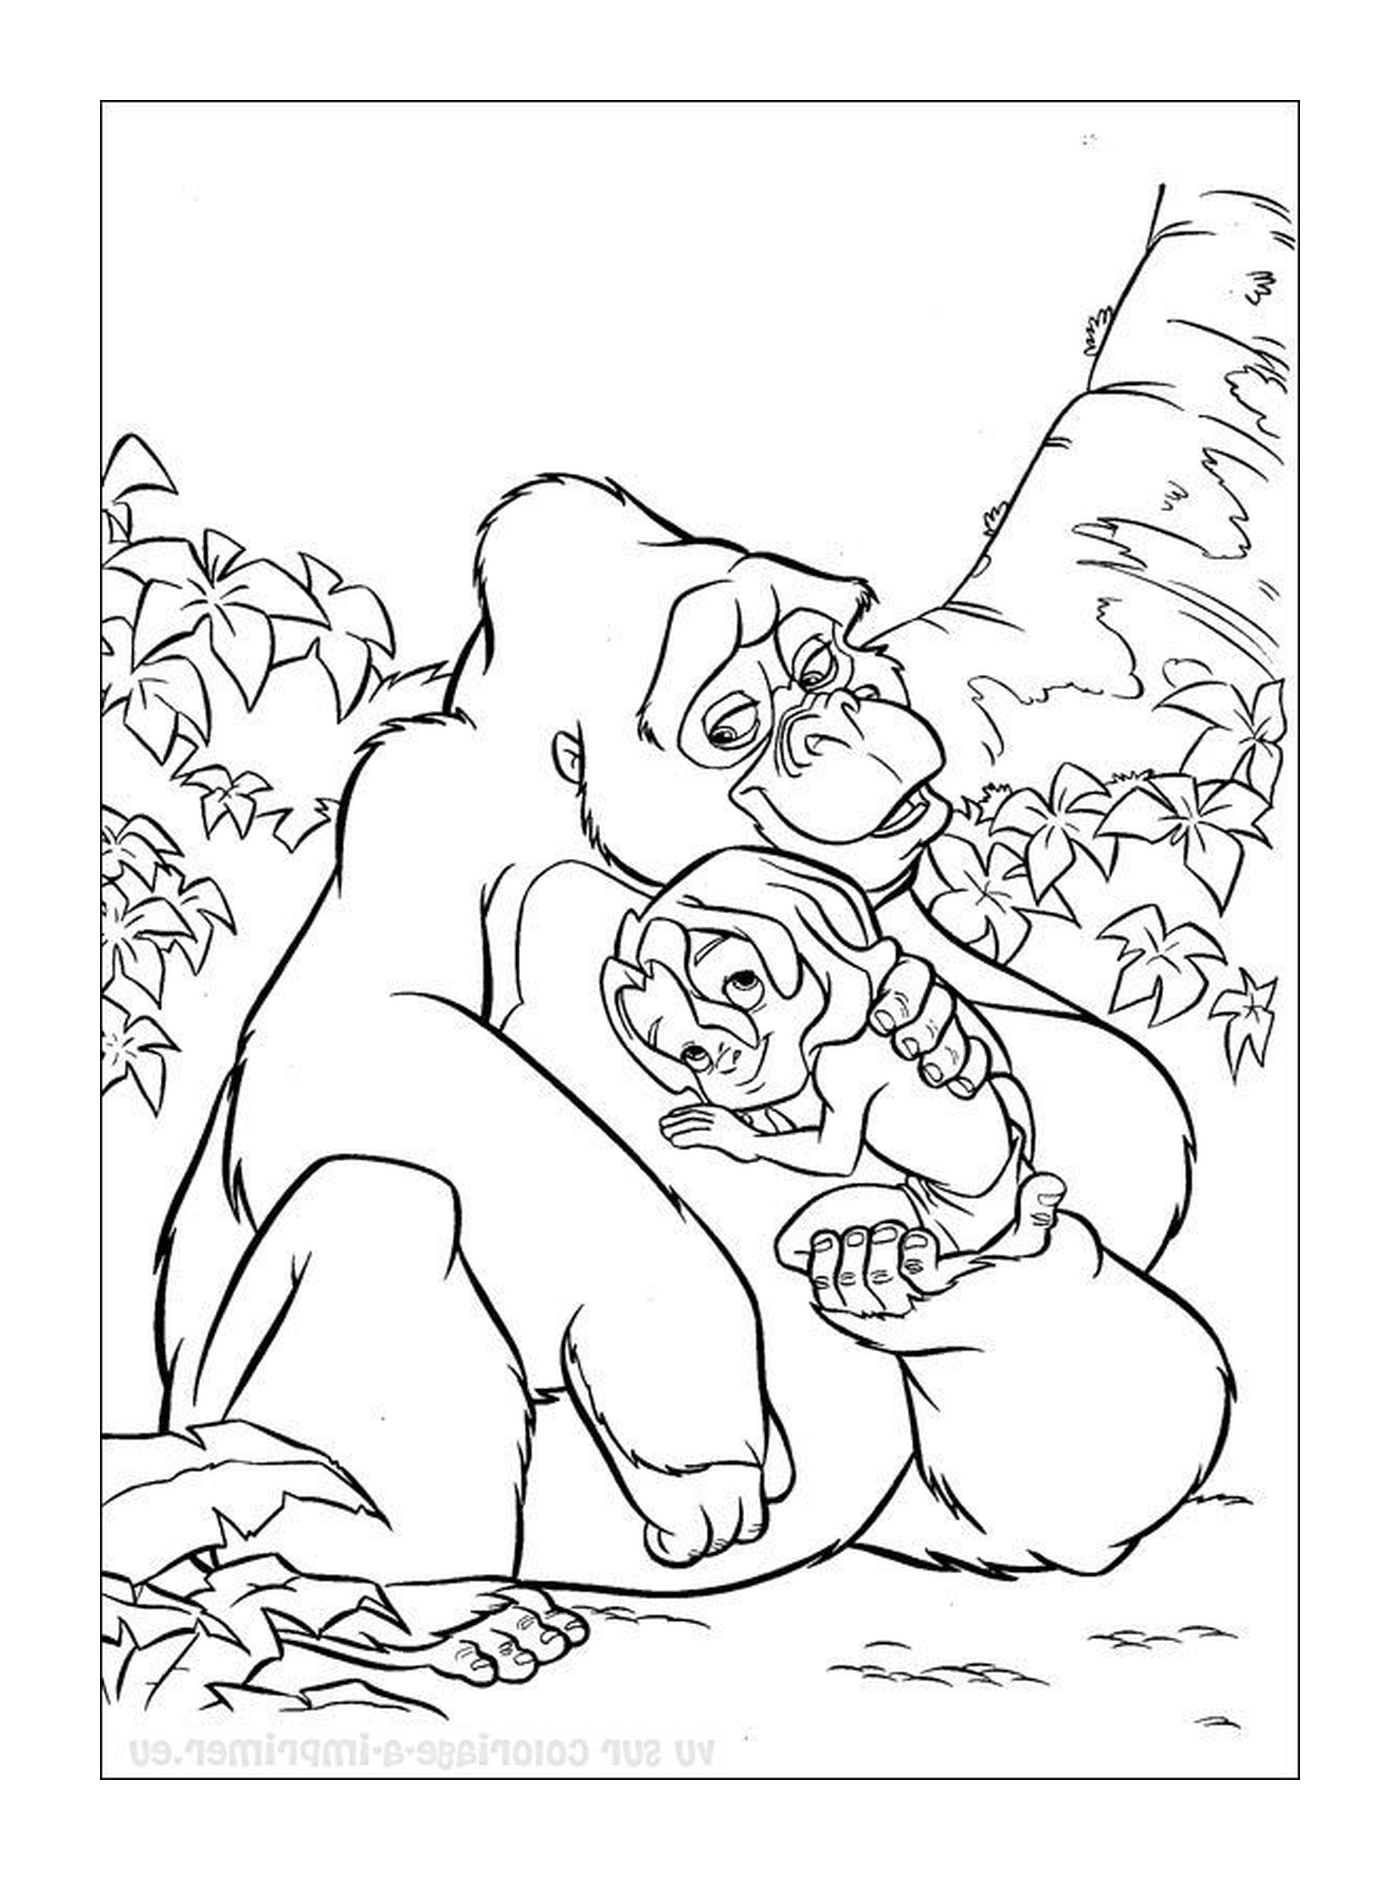  Горилла, держащая на руках маленькую гориллу 